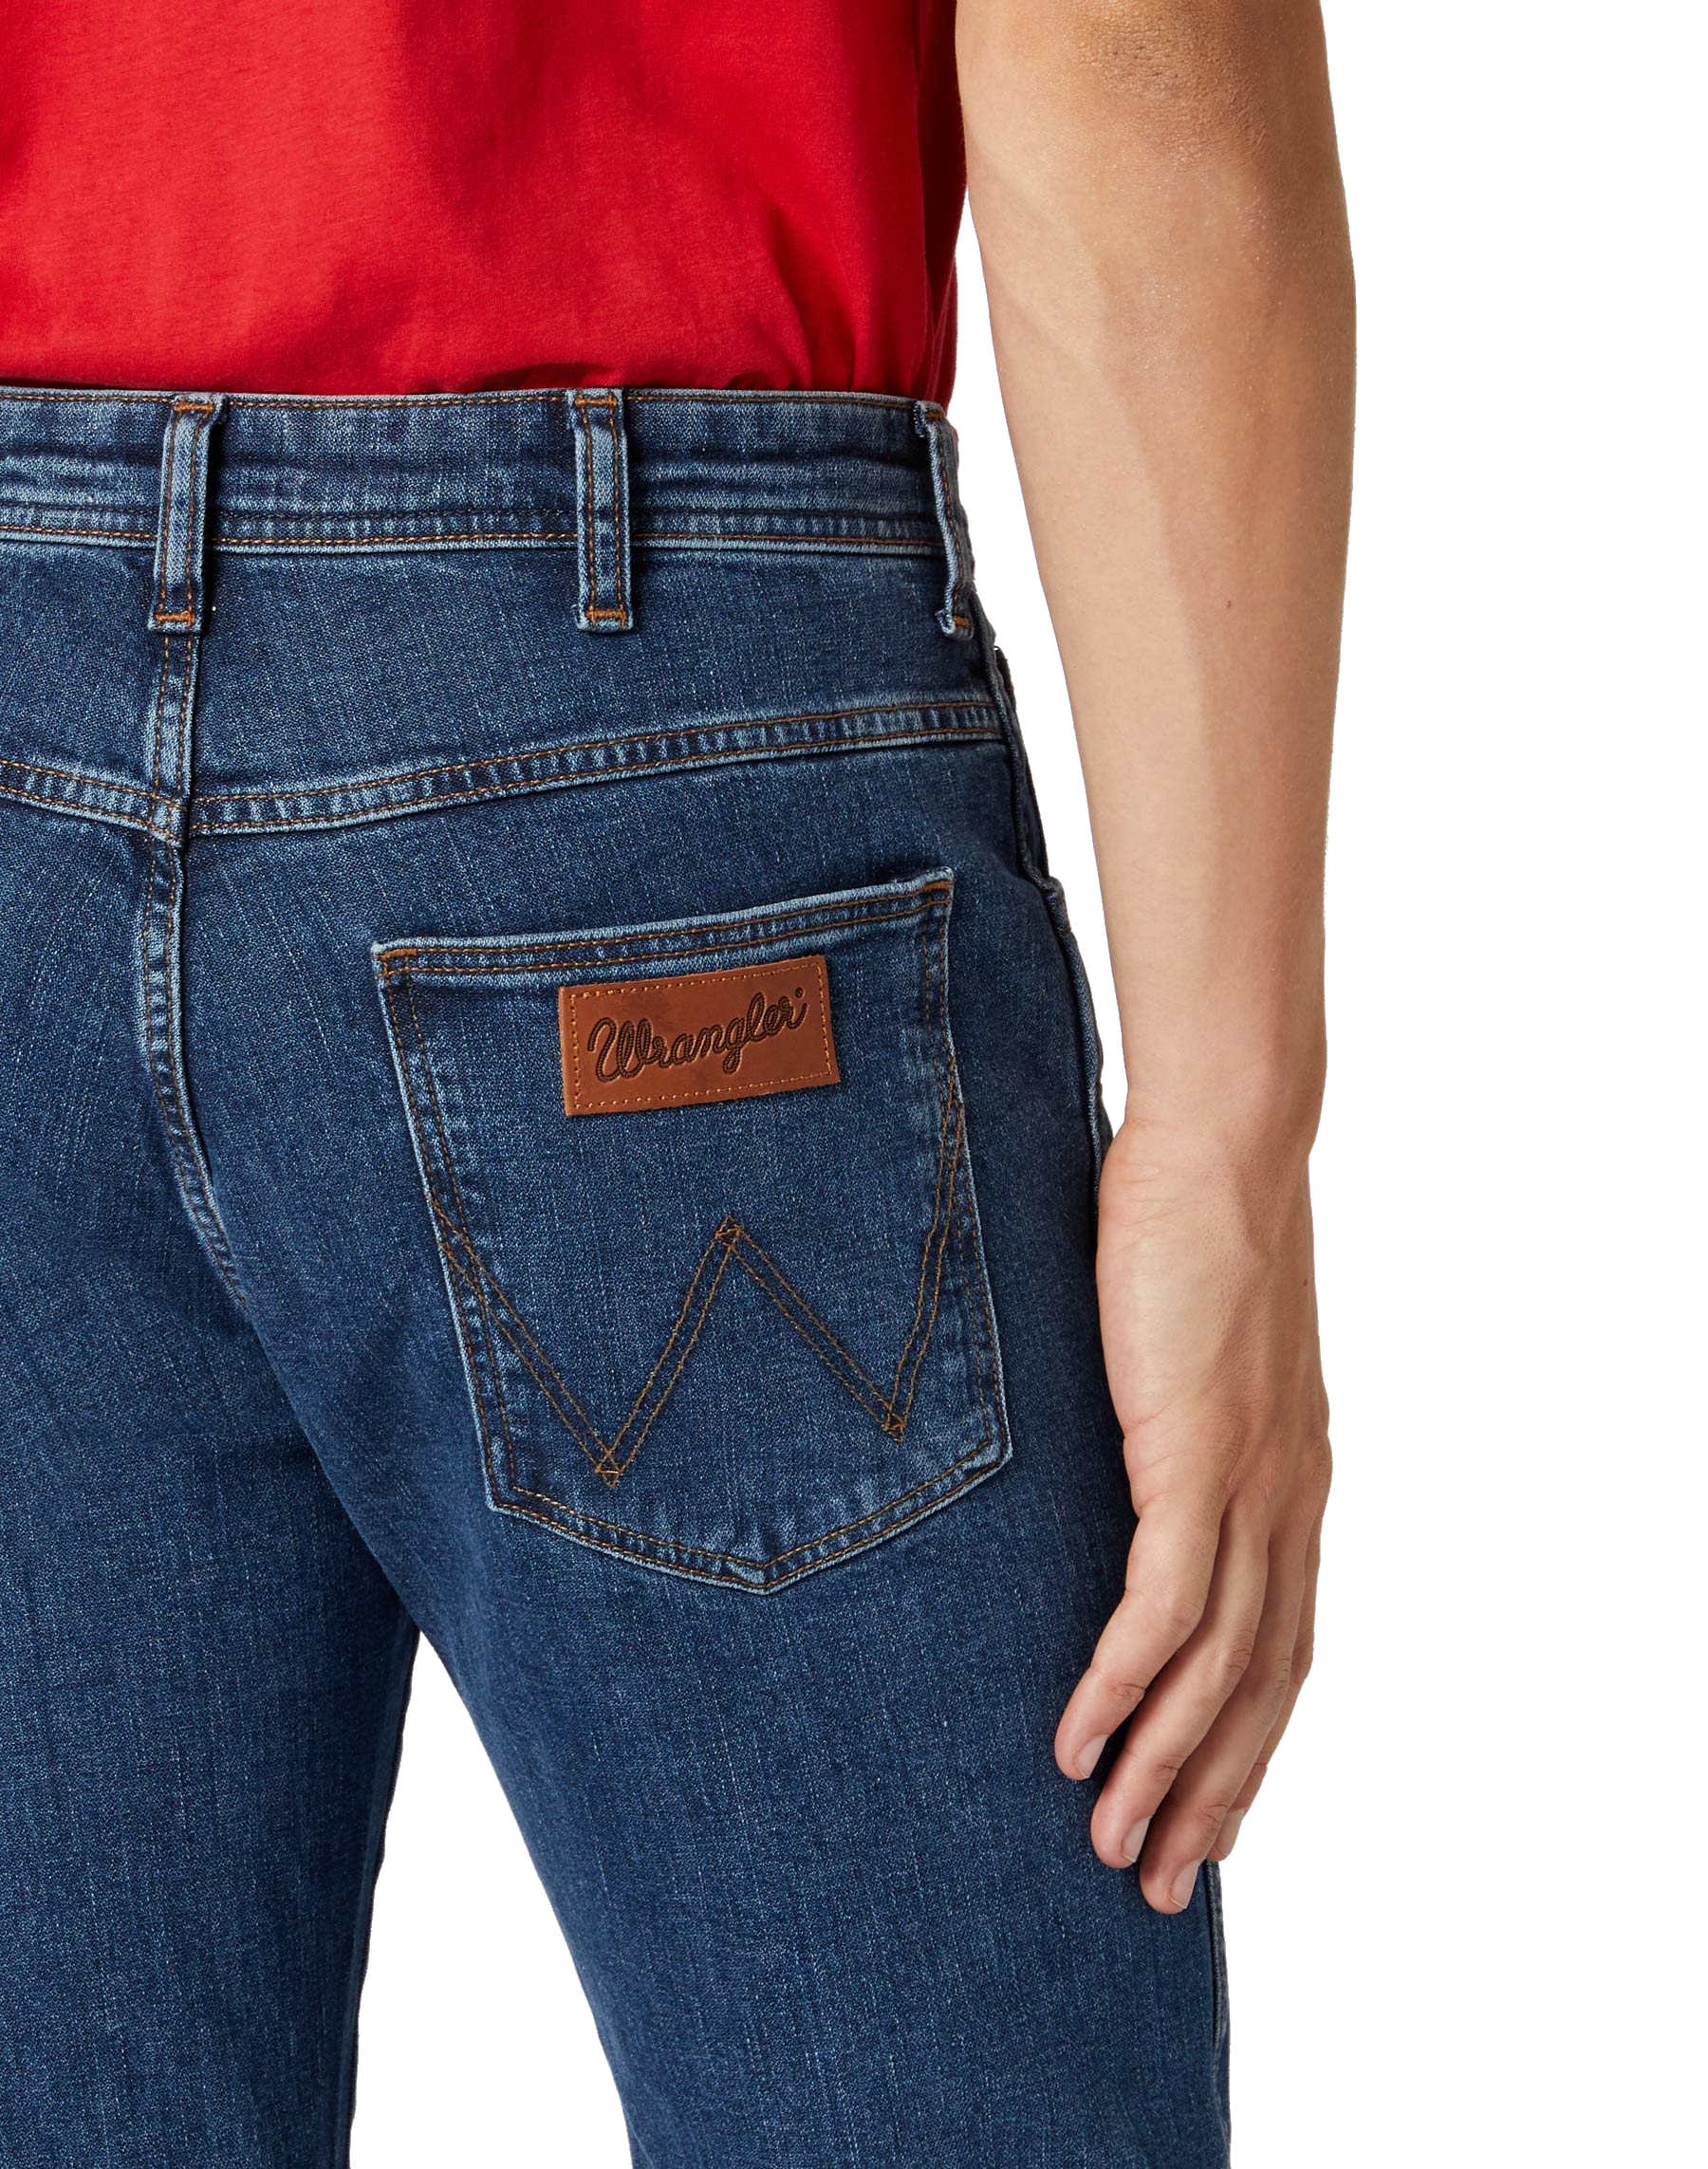 online Marken Herren Wrangler Arizona kaufen - Jeans Herren ROLLING Jeans Hose Damen Stretch und ROCK